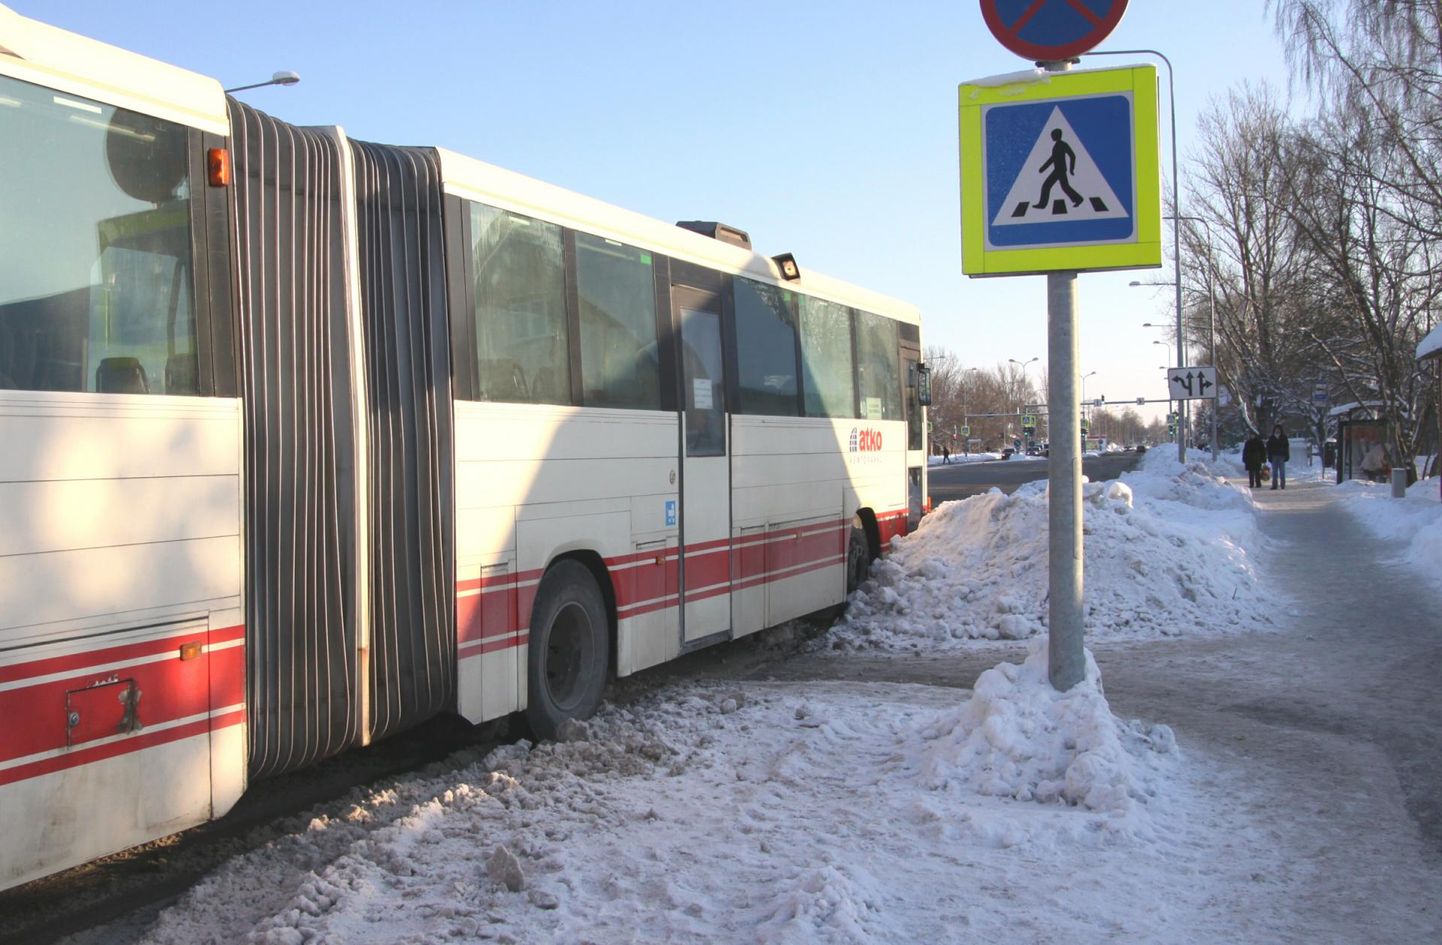 Kindlasti on Pärnumaal tegutsevaist ettevõtteist saanud enim kriitikat bussifirma Atko. Sindi linna Sauga vallaga ühendava bussiliini kohta on vaid vähestel nimetatud piirkondade inimestel öelda midagi head.